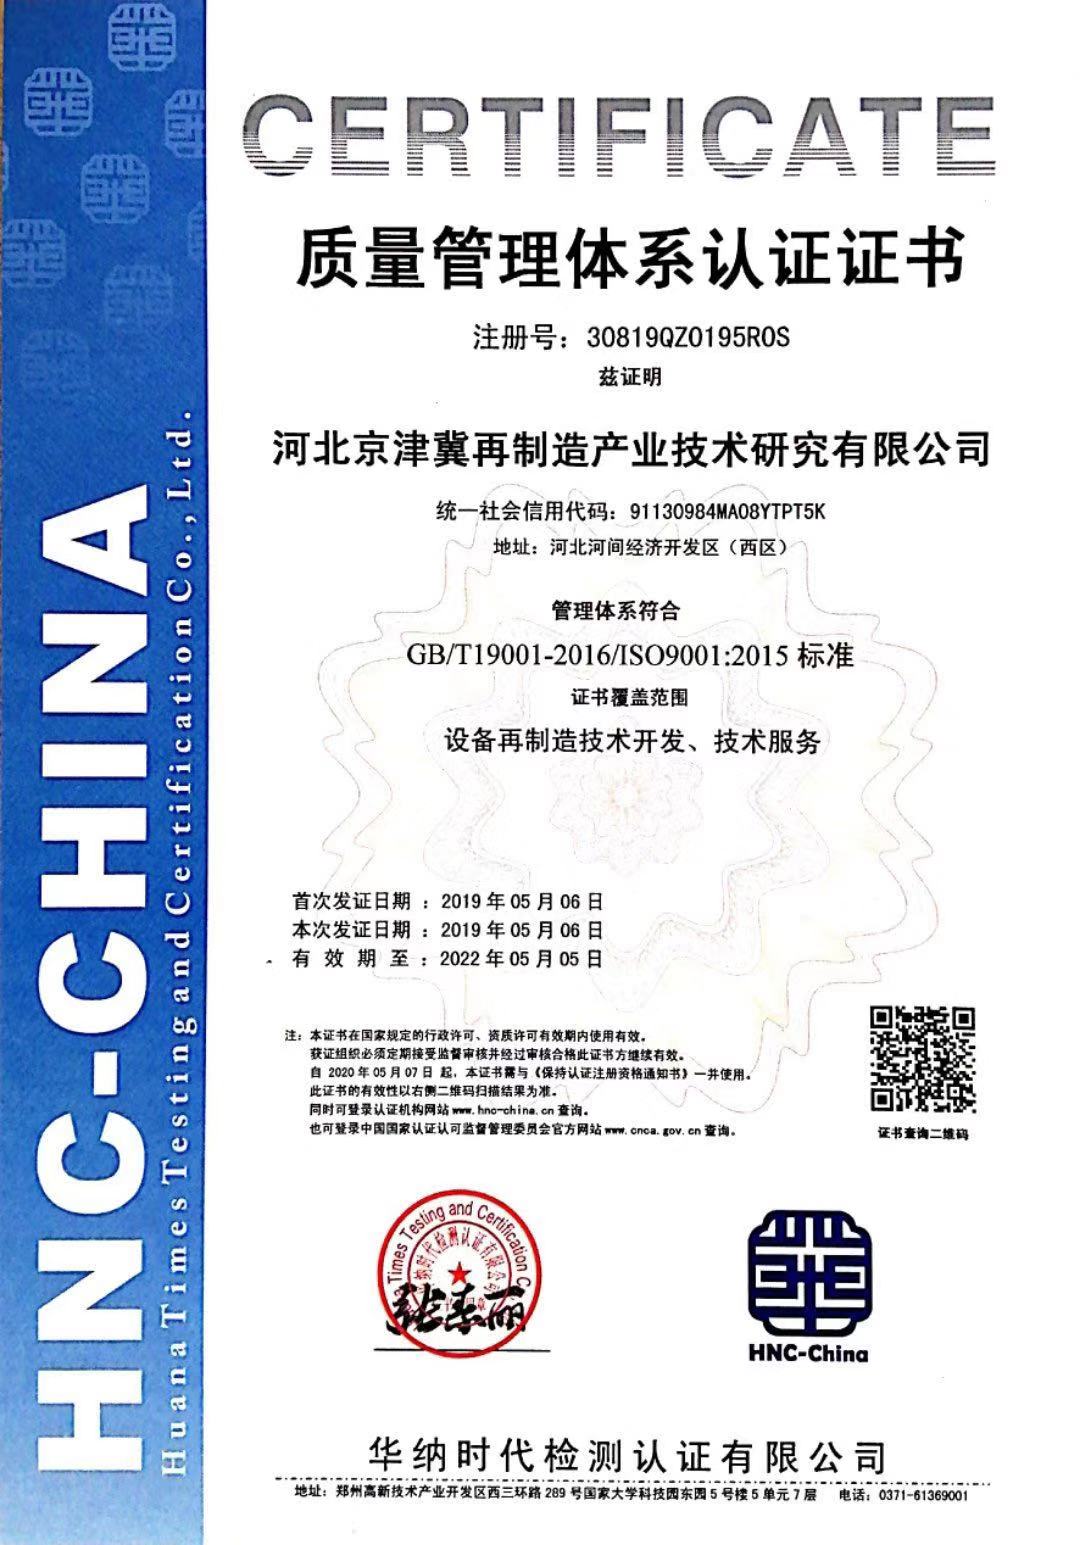 体系认证-质量管理体系认证证书